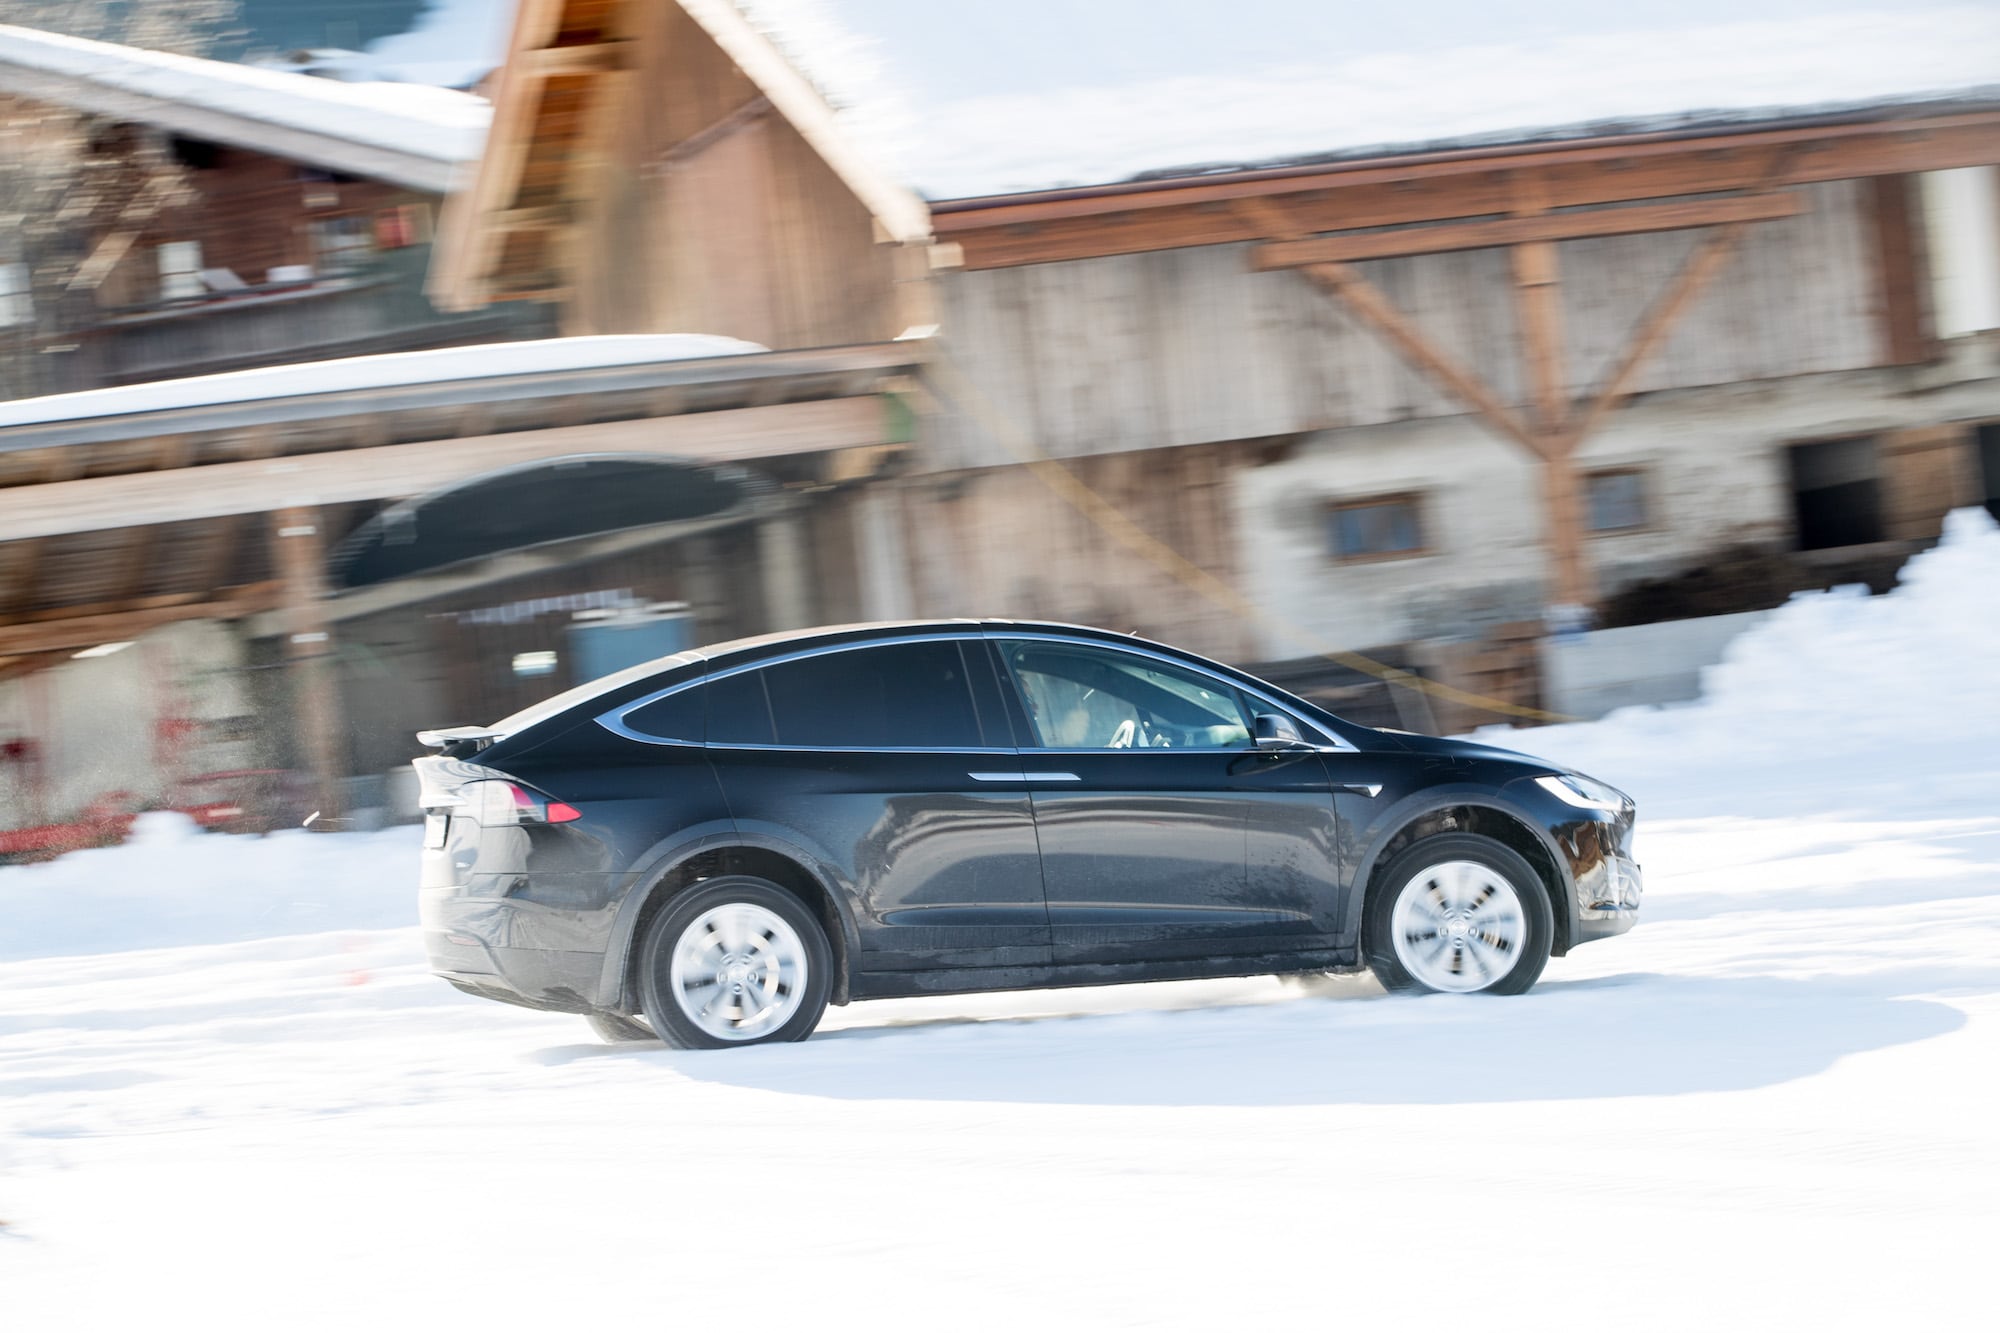 Härteprobe unter winterlichen Bedingungen: Die Tesla Winter Driving Experience 6